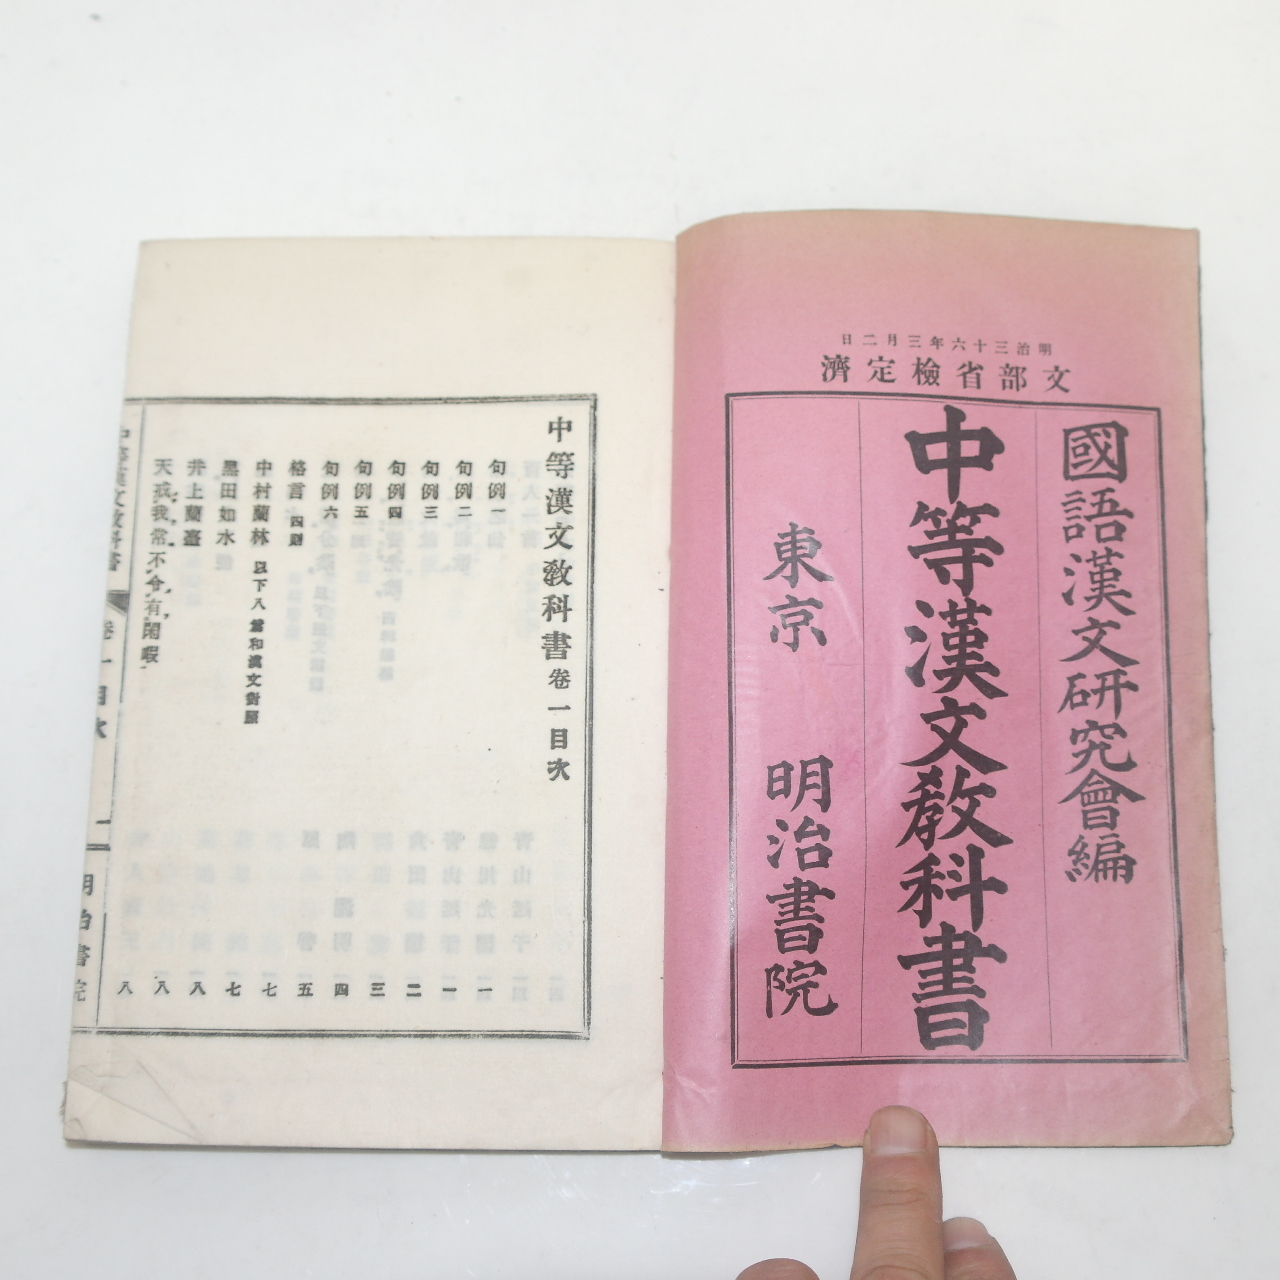 1905년(명치38년) 일본간행 중등한문교과서 권1